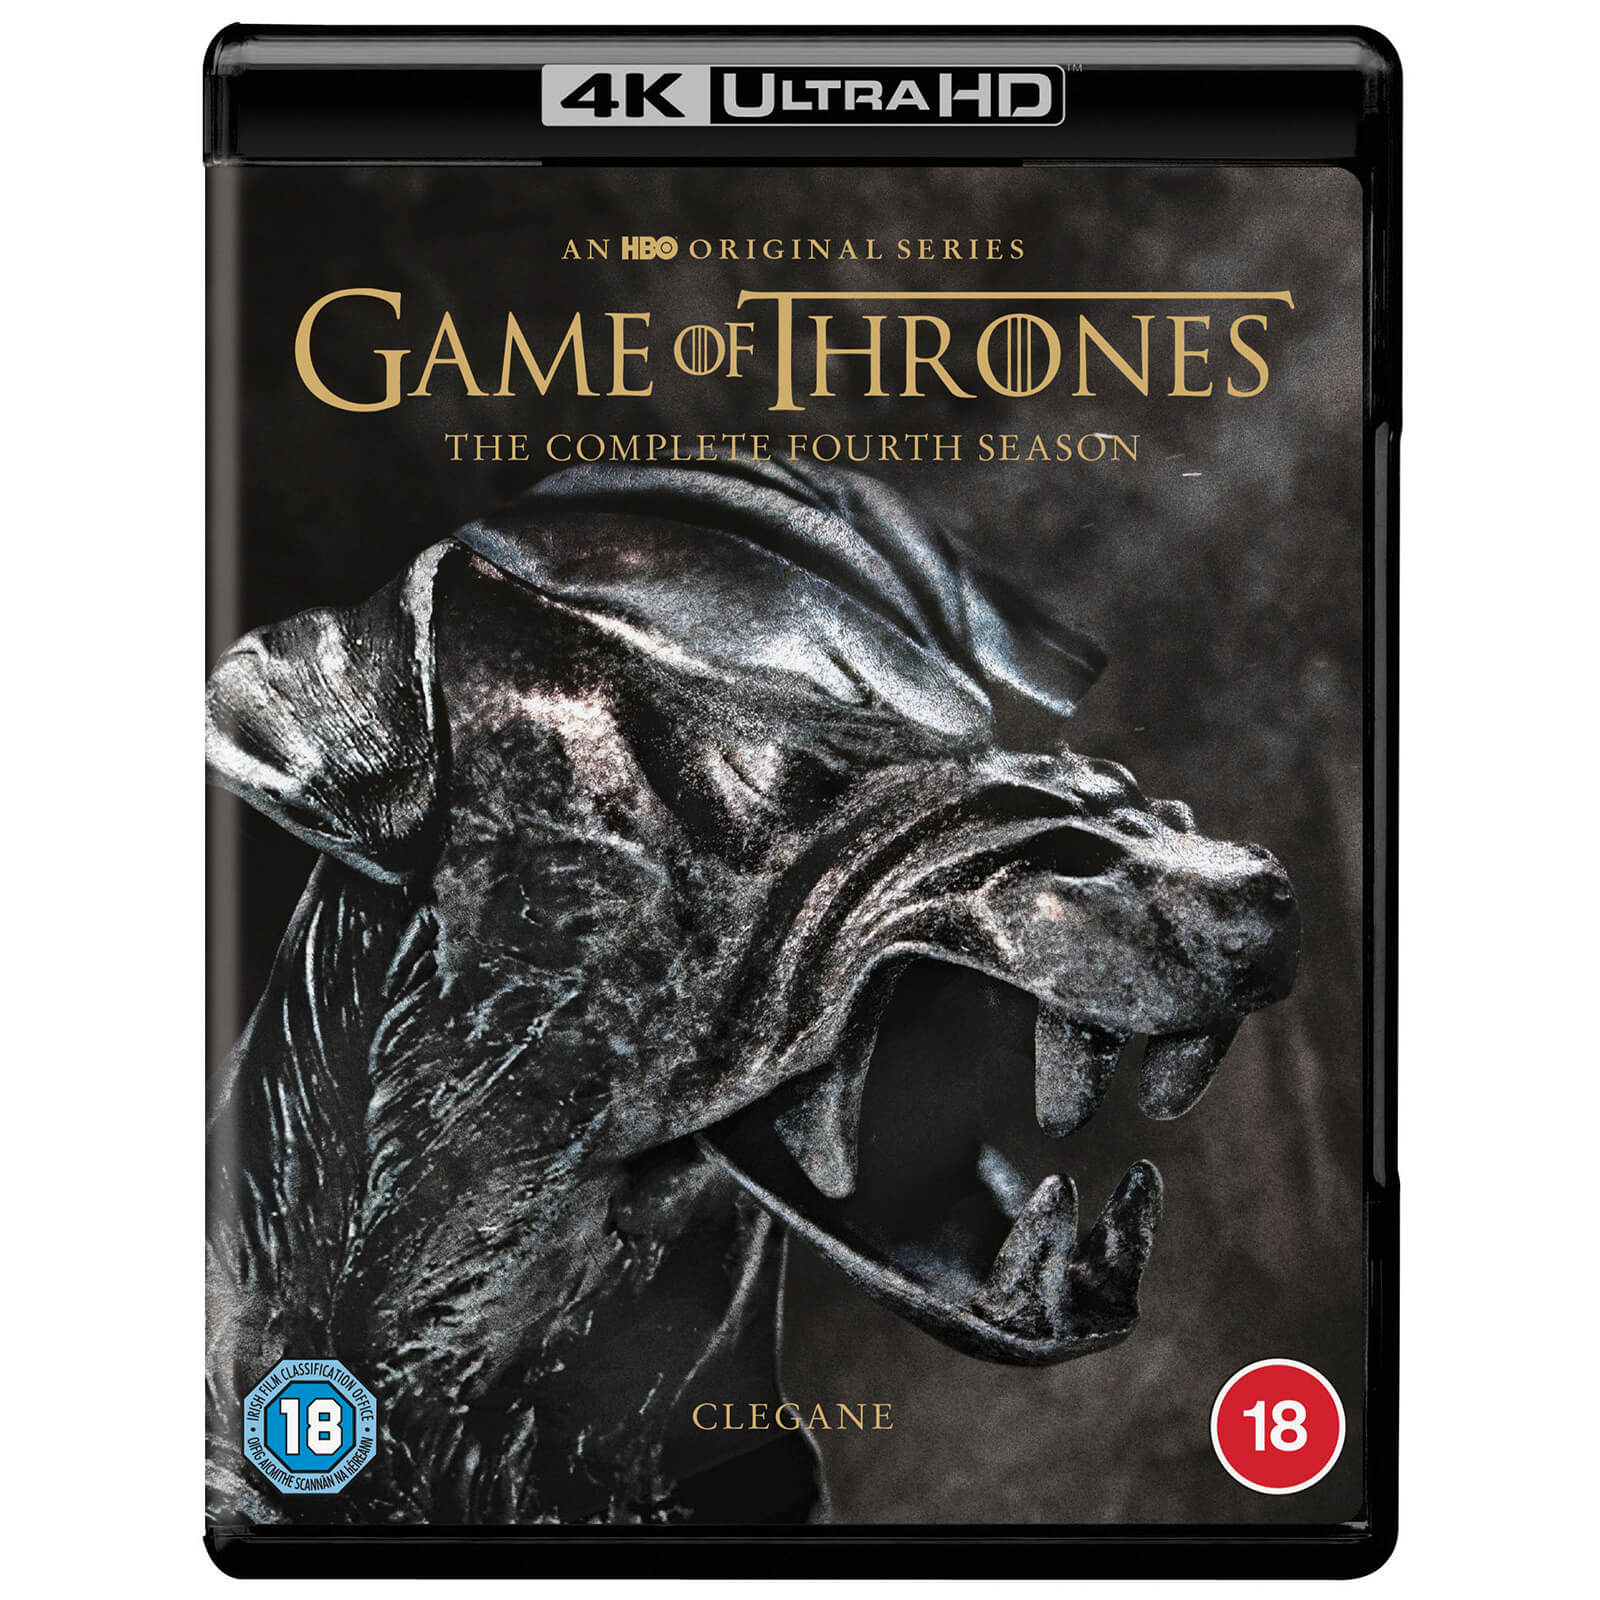 Bild von Game of Thrones: Staffel 4 - 4K Ultra HD